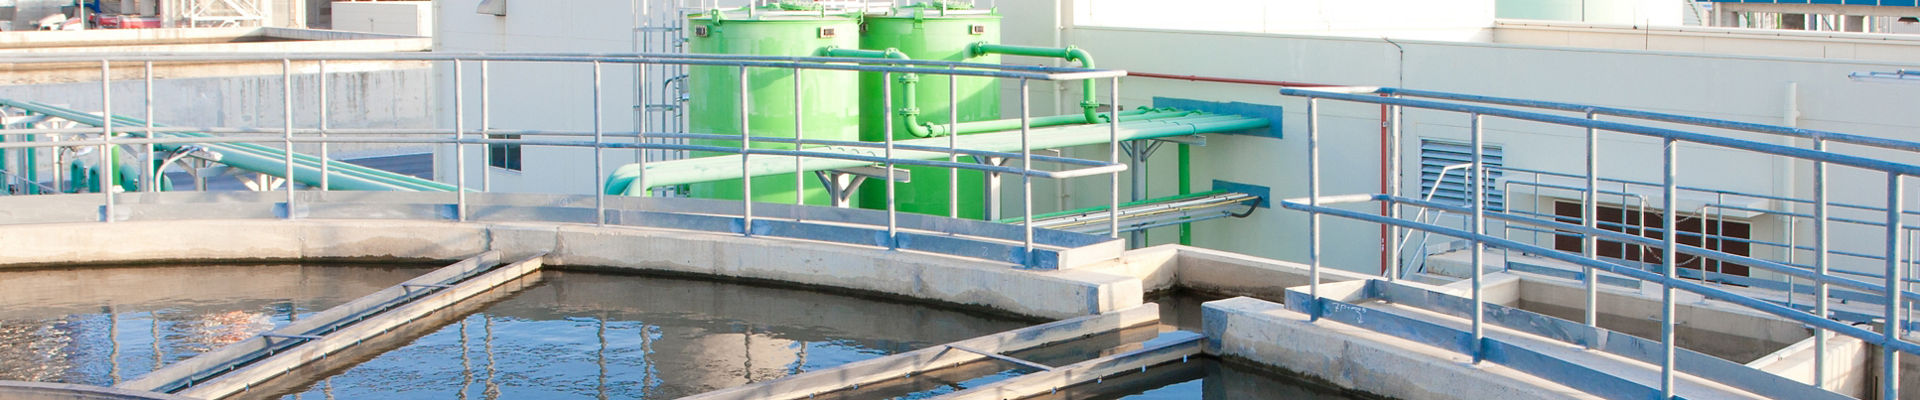 排水処理システムの処理タンク